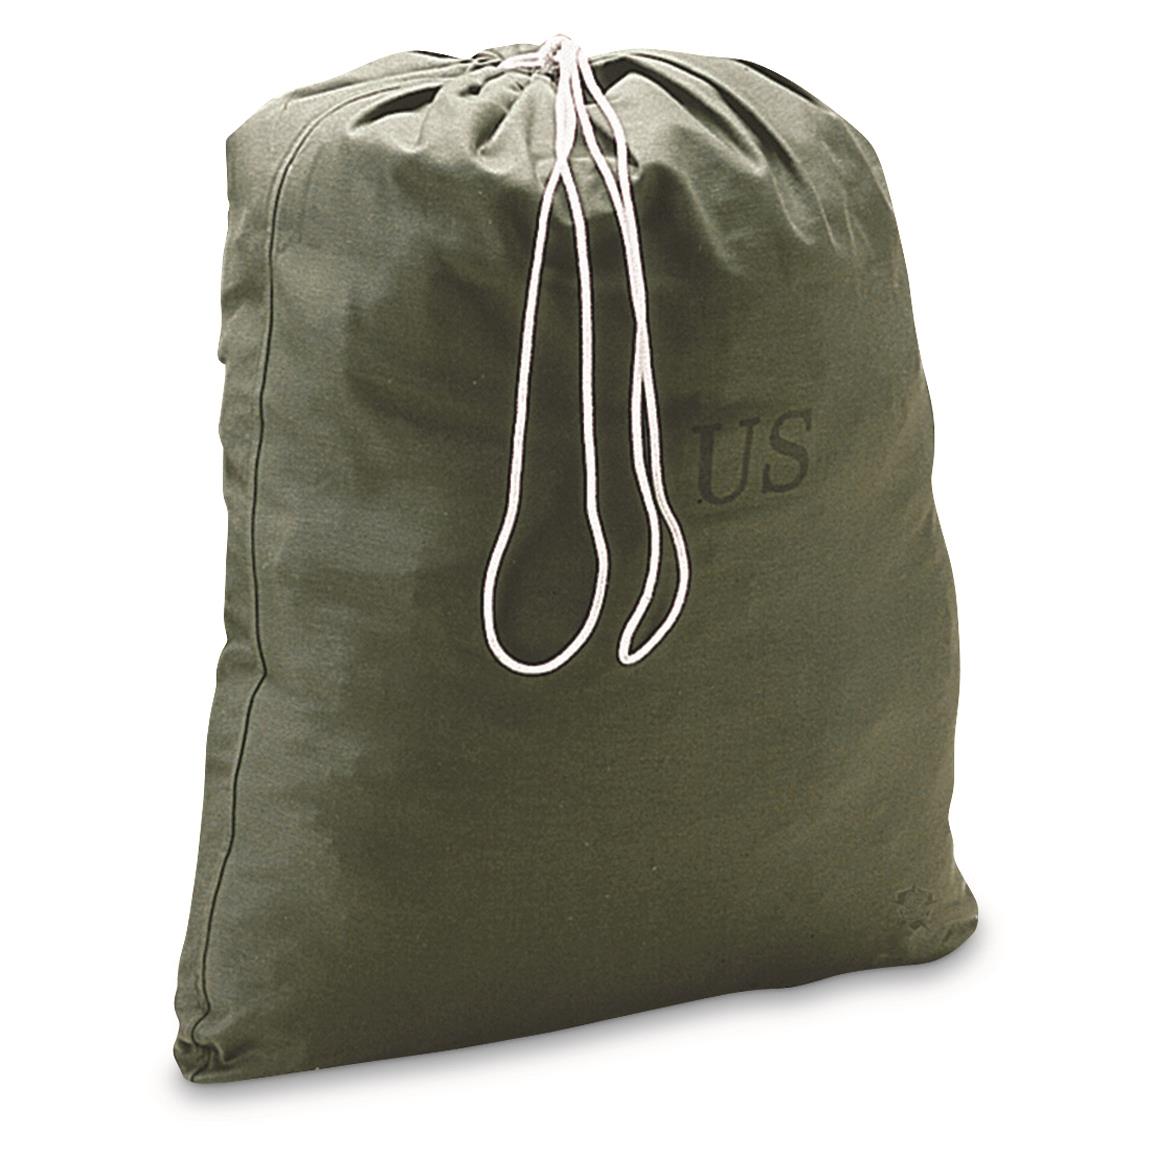 U.S. Military Surplus Laundry Bag, Used, Olive Drab